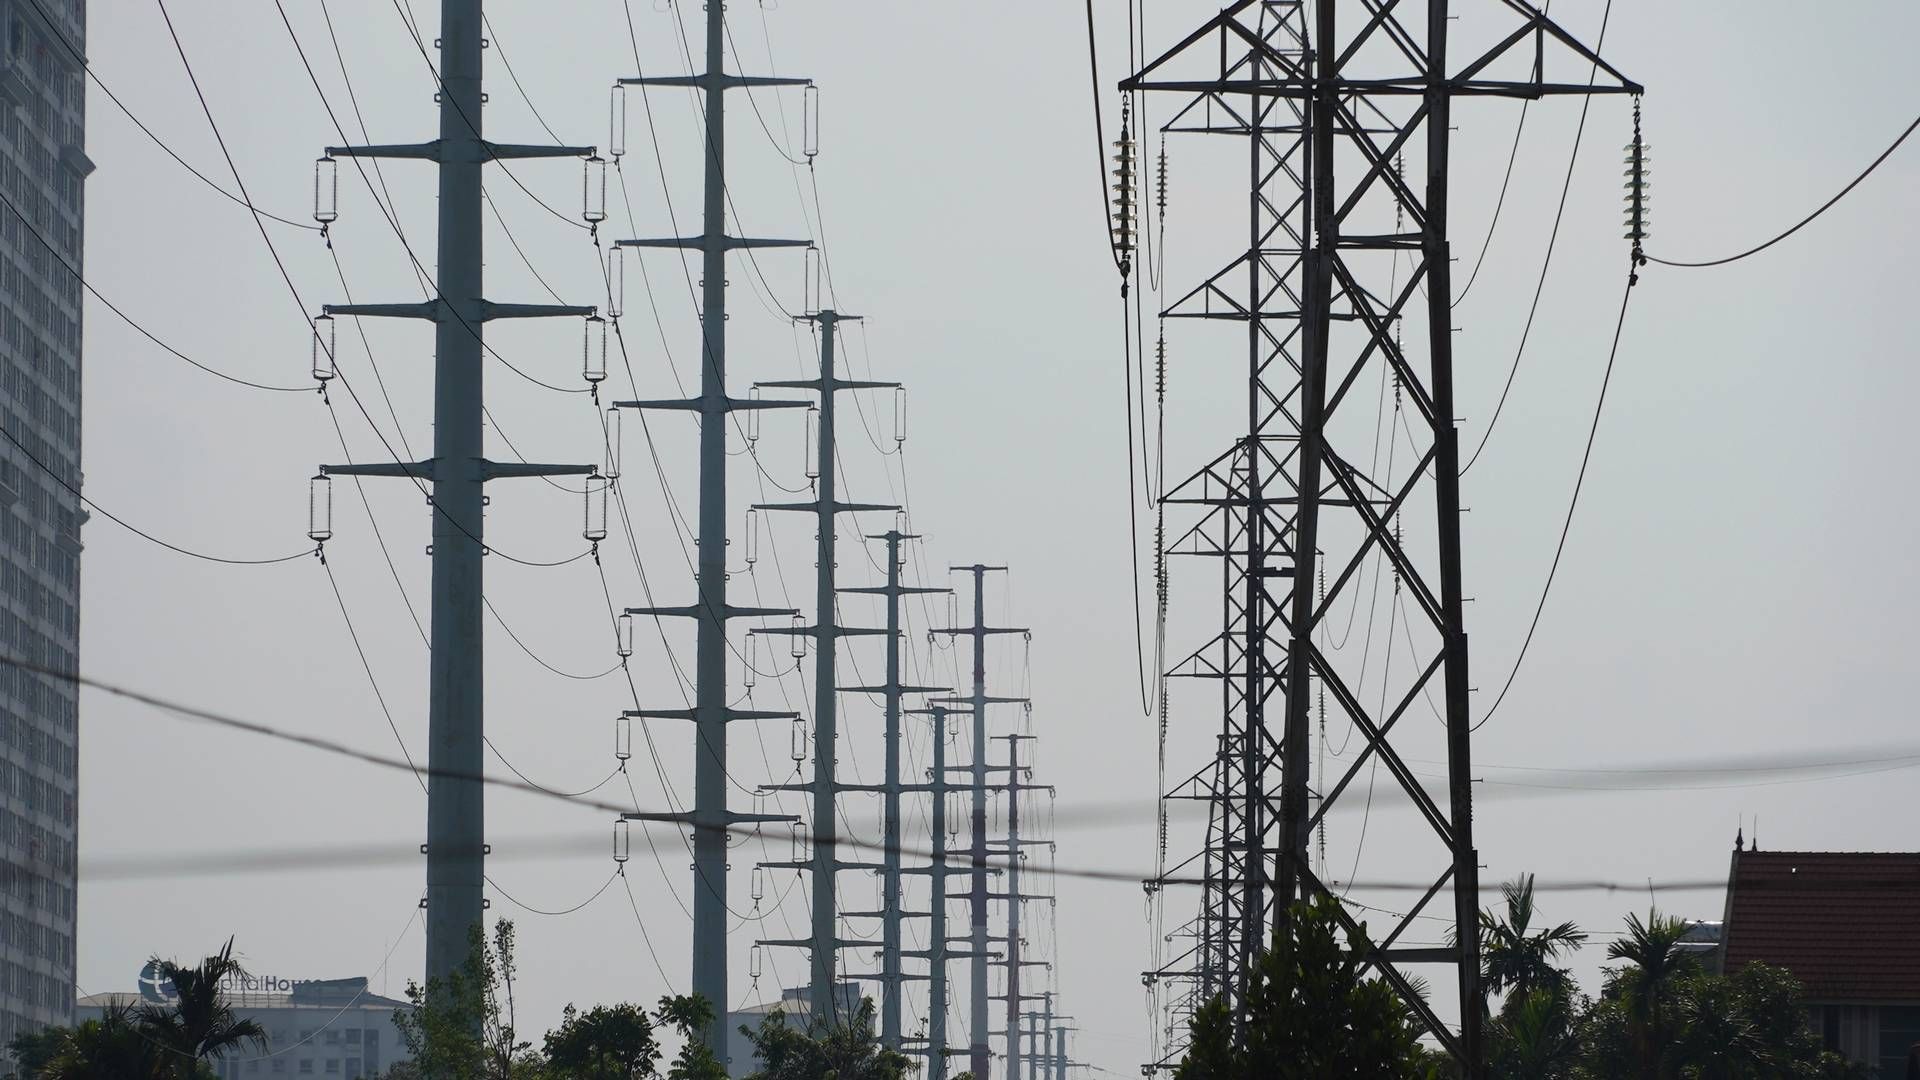 MOT OMSTILLING: Finansiering av ny grønn infrastruktur og overgangen til fornybar energi krever regelverksendringer og begrenses av Vietnams vegring mot økt gjeldsbyrde, skriver UD i et notat fra juni. Her fra hovedstaden Hanoi. | Foto: Hau Dinh/AP /NTB